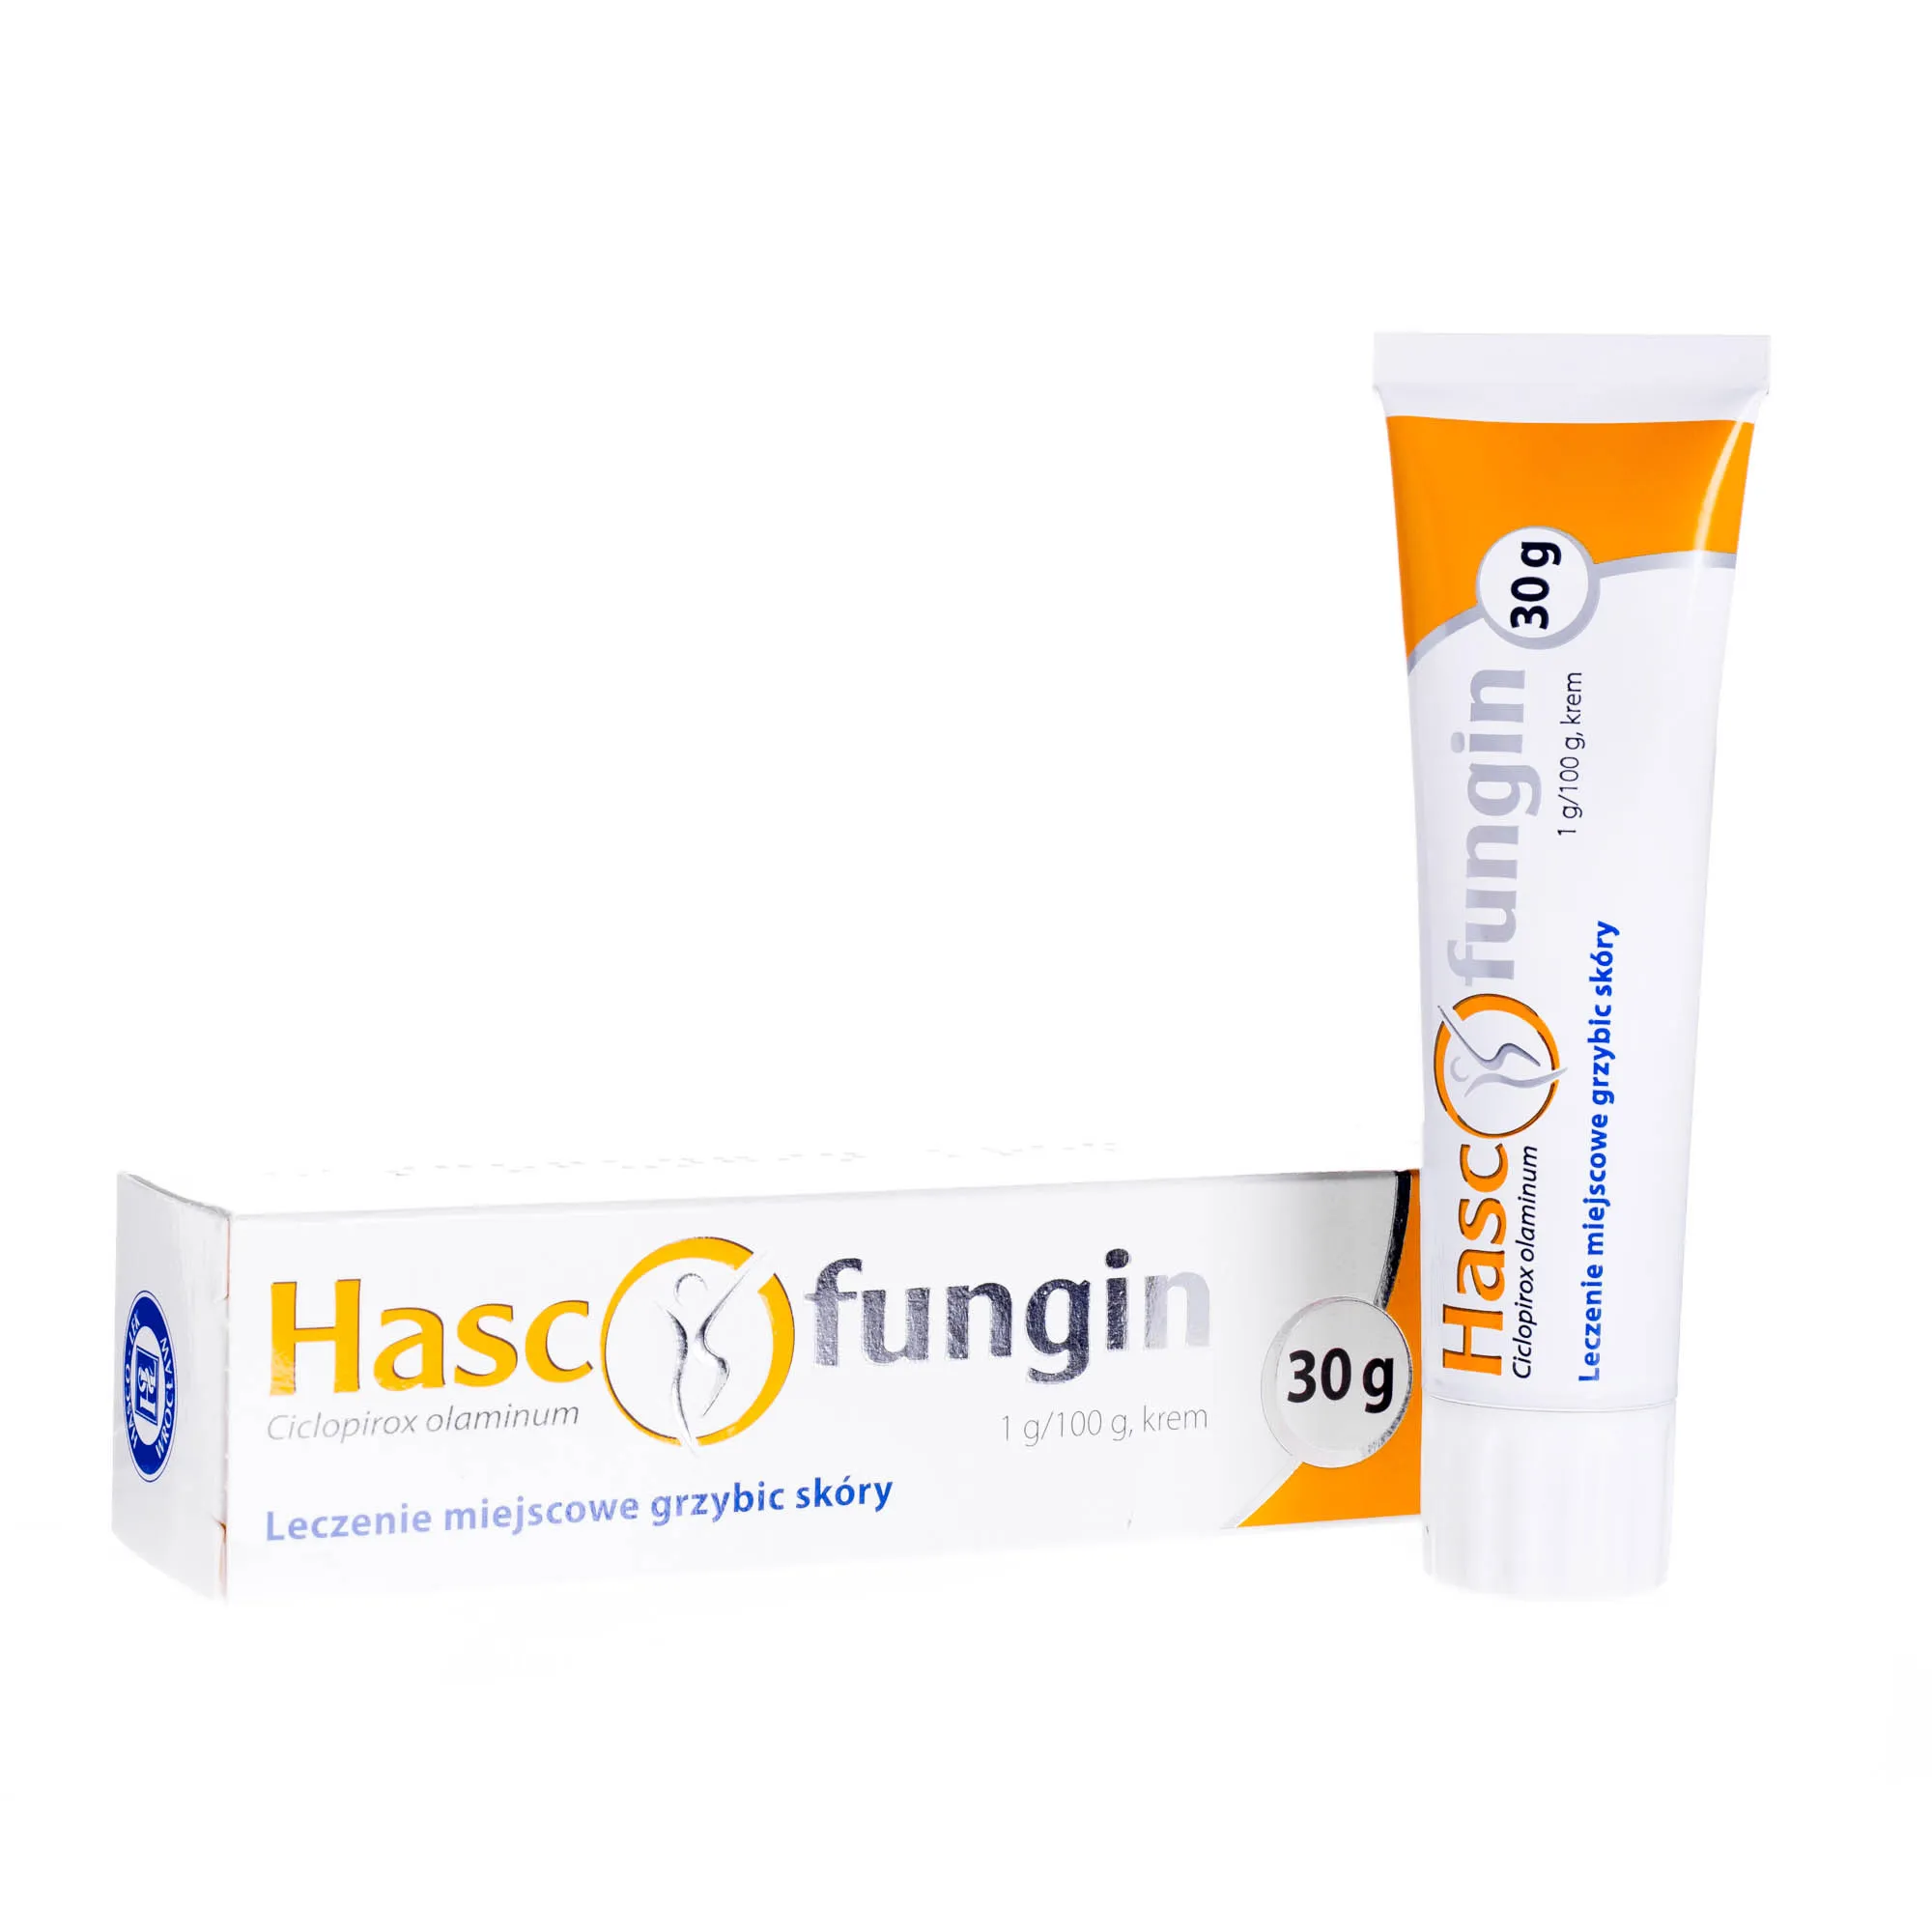 Hascofungin 1 g/100g - krem stosowany w miejscowym leczeniu grzybicy skóry, 30 g